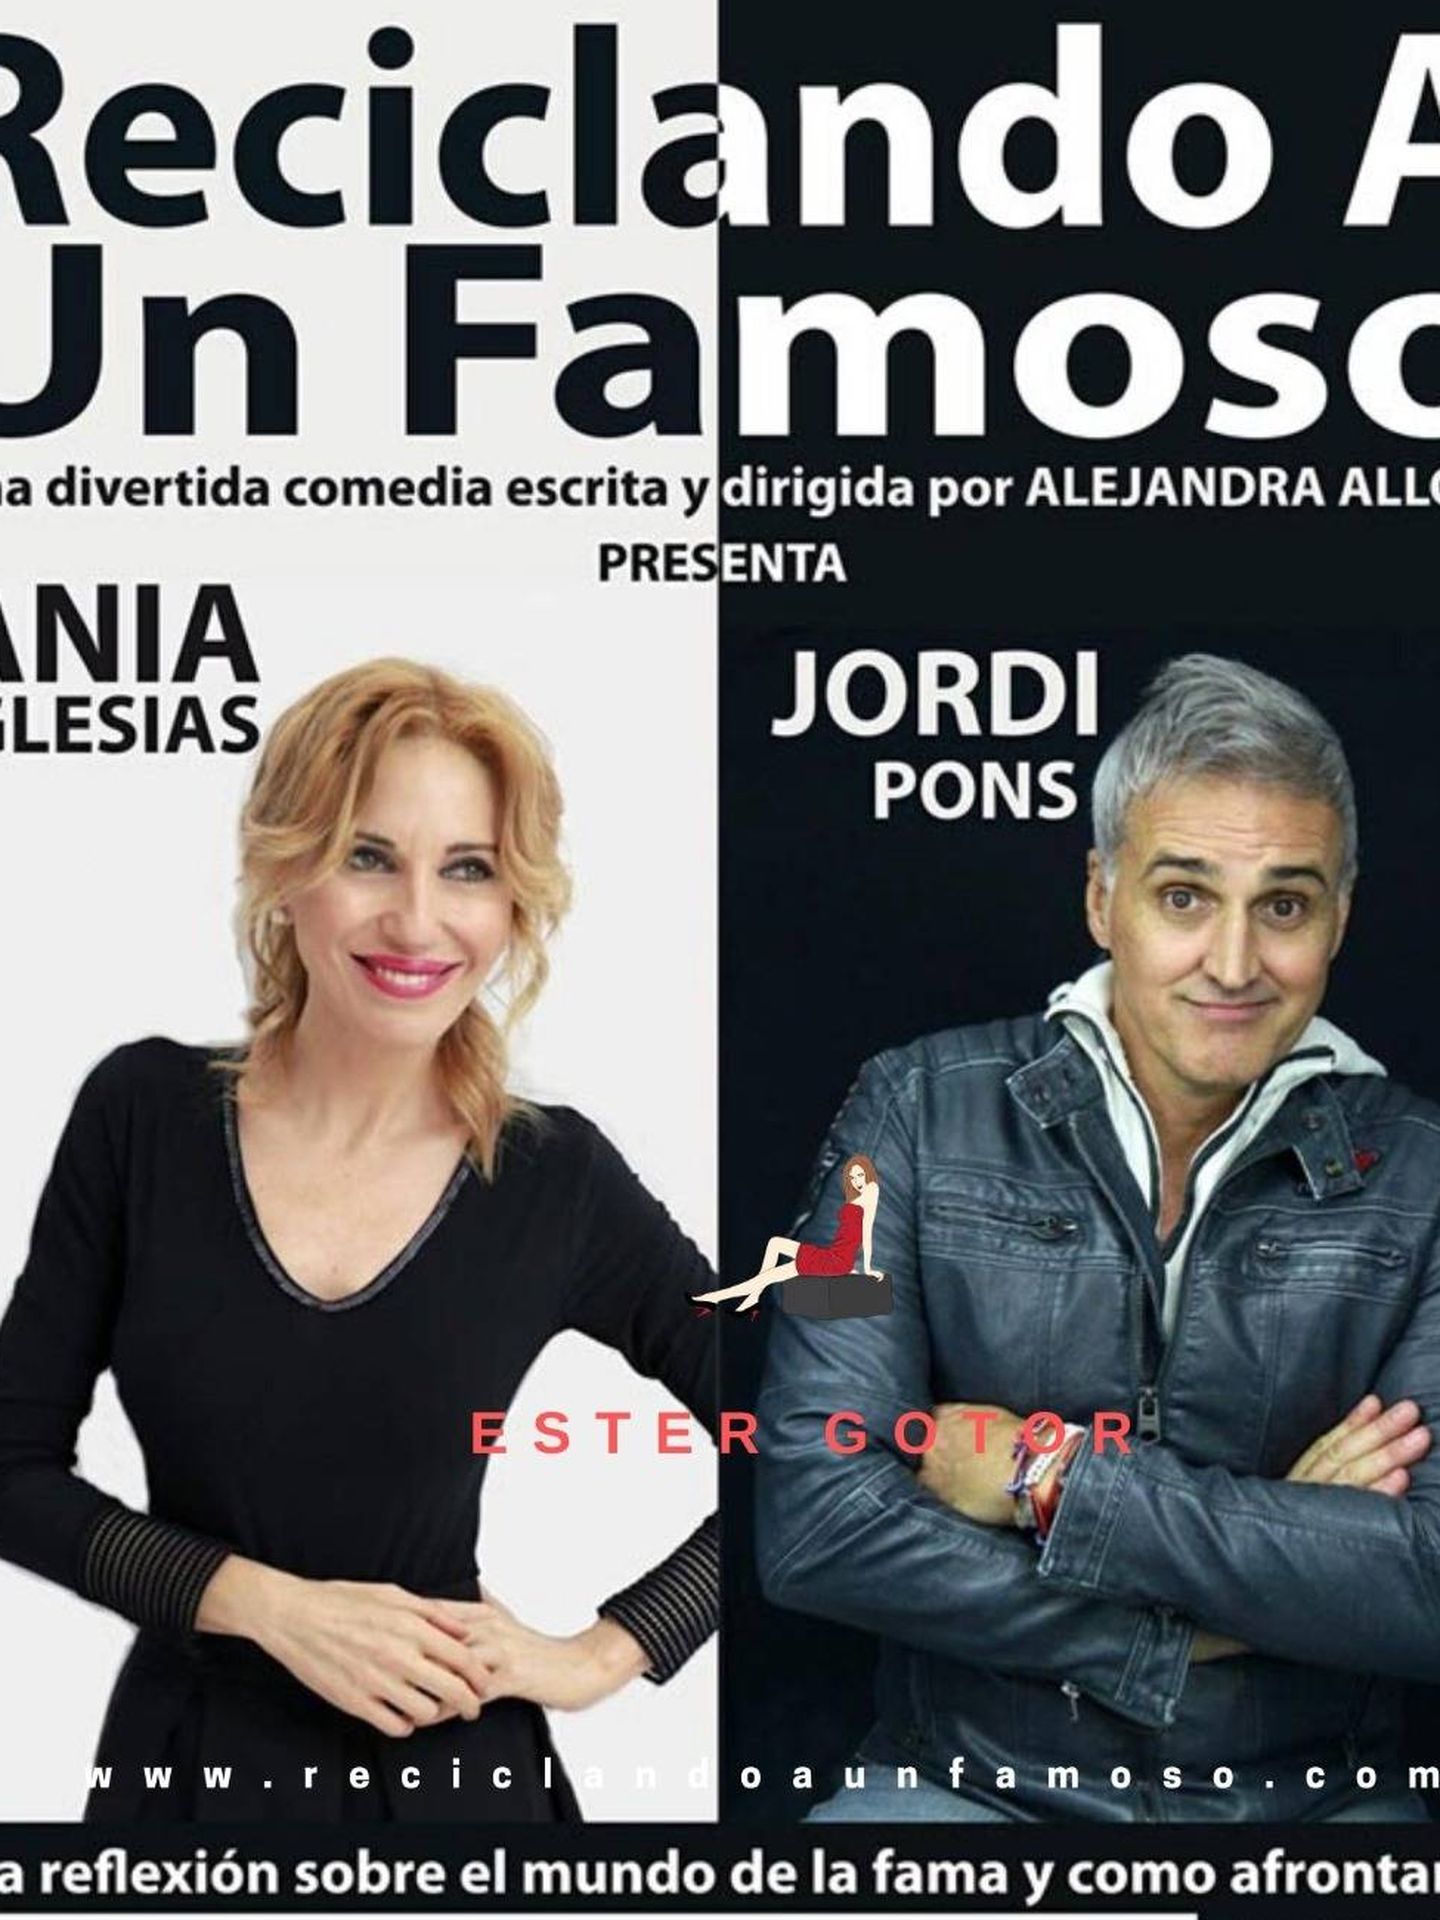 Ania Iglesias y Jordi Pons, en el cartel oficial de 'Reciclando a un famoso'